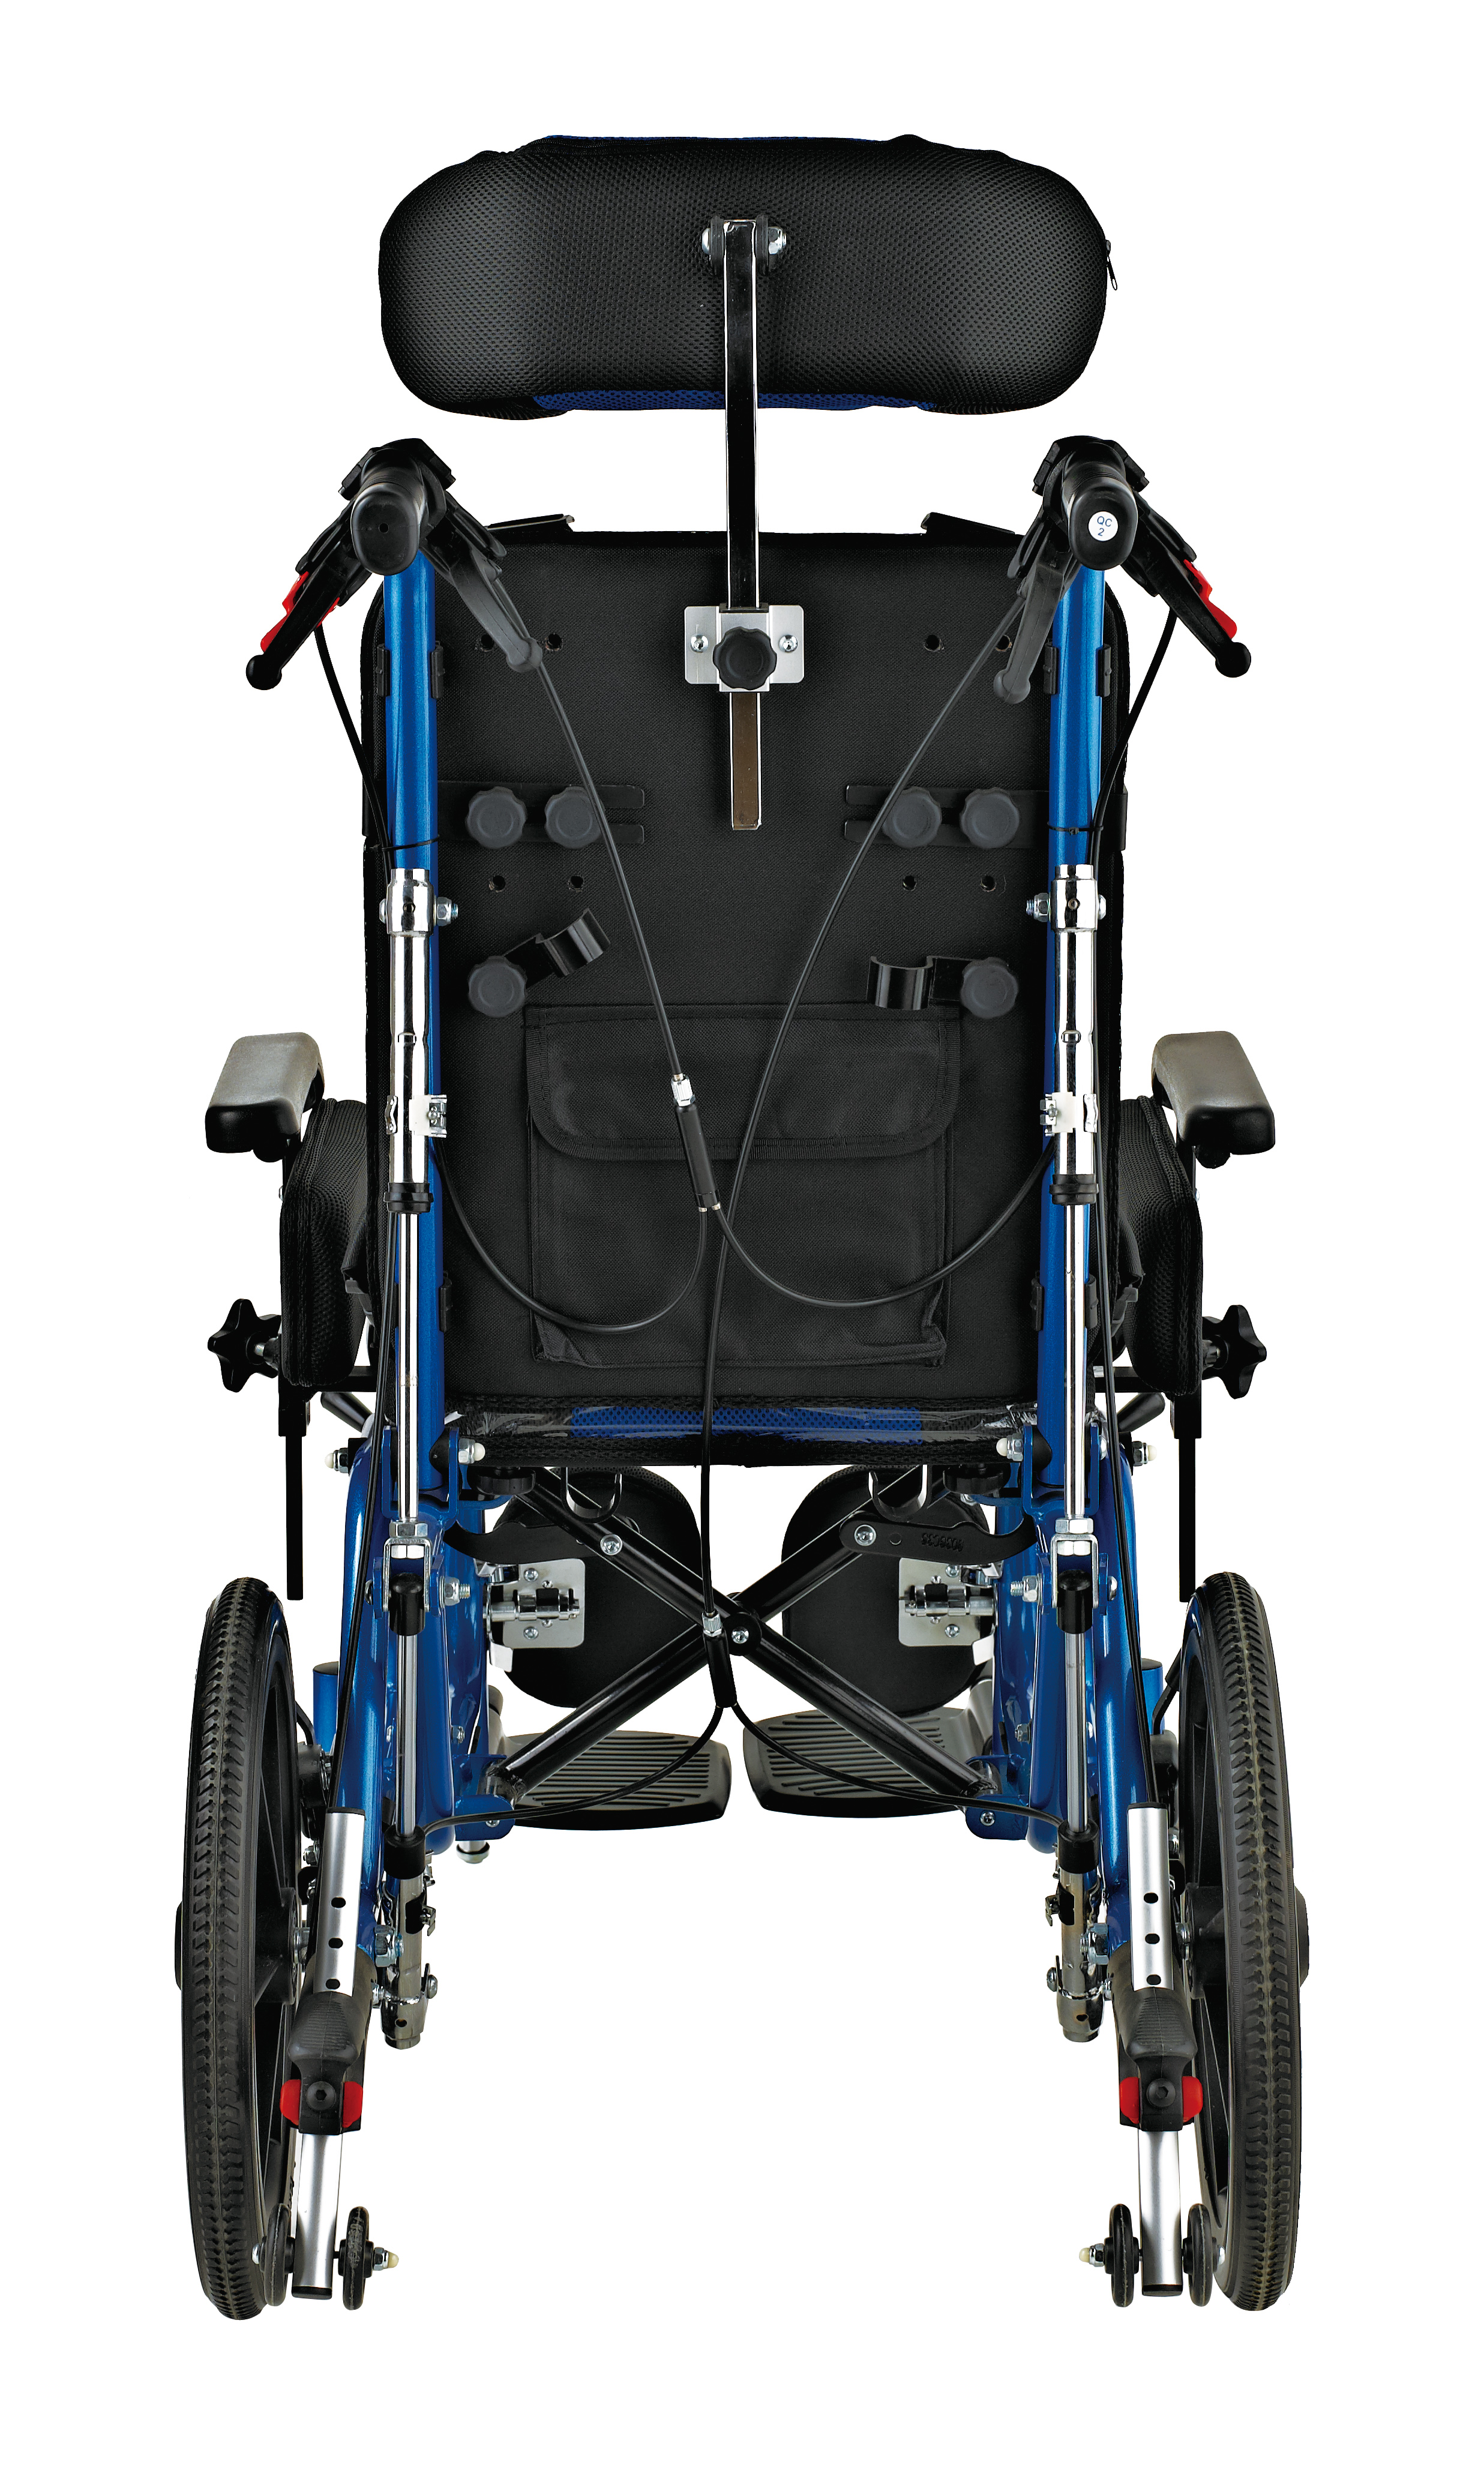 購入脳性麻痺ユーザーのための支援ポジショニング車椅子,脳性麻痺ユーザーのための支援ポジショニング車椅子価格,脳性麻痺ユーザーのための支援ポジショニング車椅子ブランド,脳性麻痺ユーザーのための支援ポジショニング車椅子メーカー,脳性麻痺ユーザーのための支援ポジショニング車椅子市場,脳性麻痺ユーザーのための支援ポジショニング車椅子会社